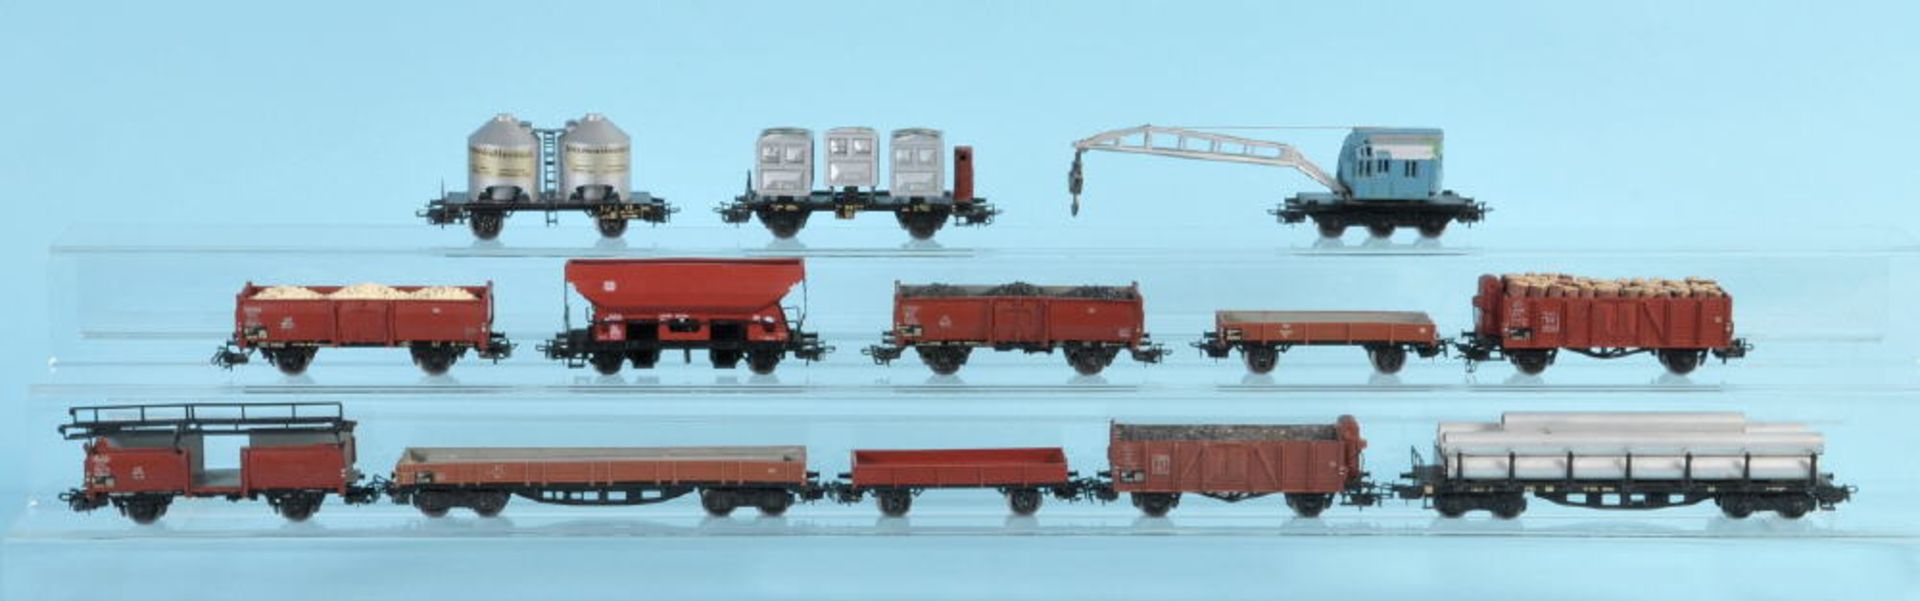 Märklin - Offene Güterwagen, 12 Stück und 1 SchienenkranSpur H0, bespielt